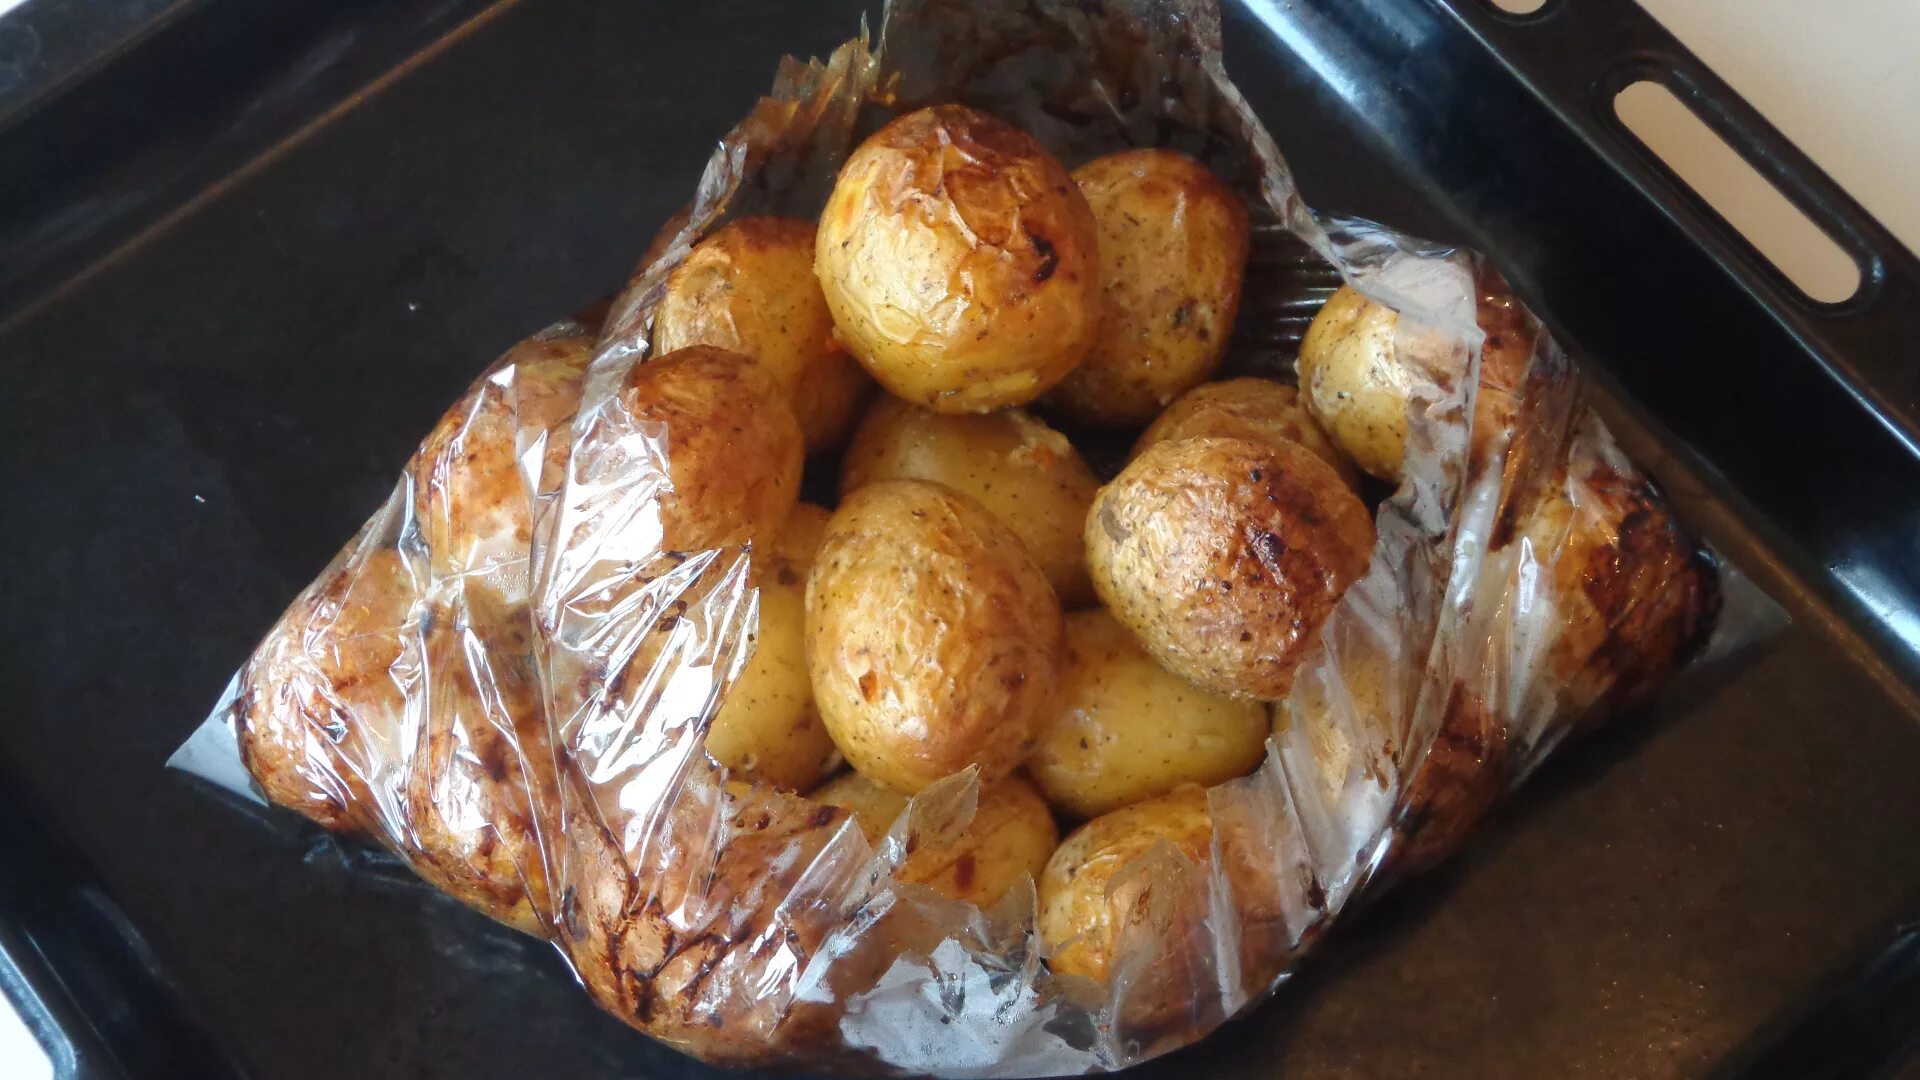 Картошка в кожуре в фольге. Картошка в пакете в духовке. Картошка в пакете для запекания в духовке. Картофель в пакете для запекания в духовке. Картофель в пакете в духовке.